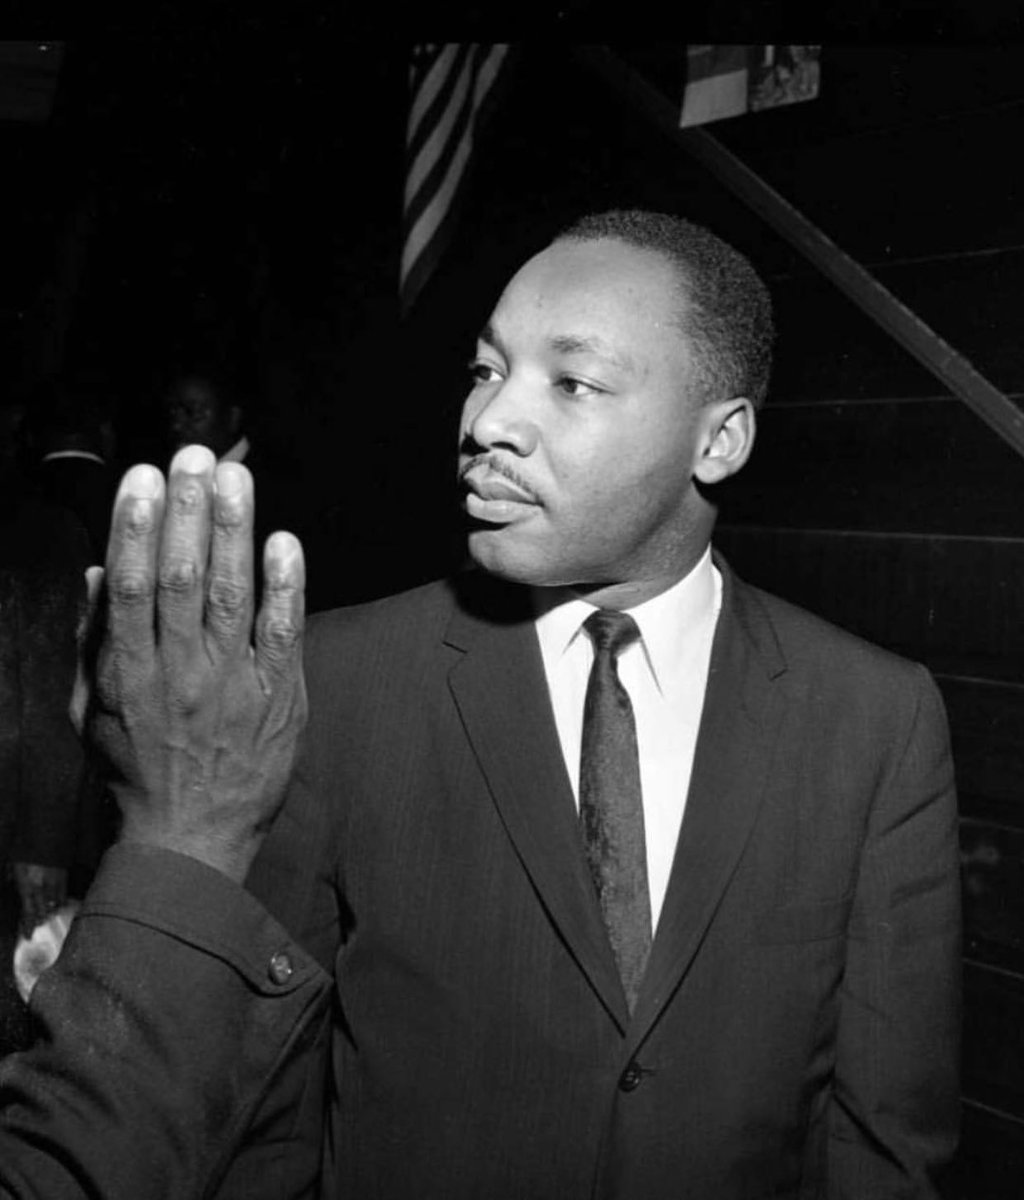 LET US NEVER FORGET!! #MLK #DREAMSTILLLIVES ♥️♥️???????? https://t.co/bDOgMtzyEt